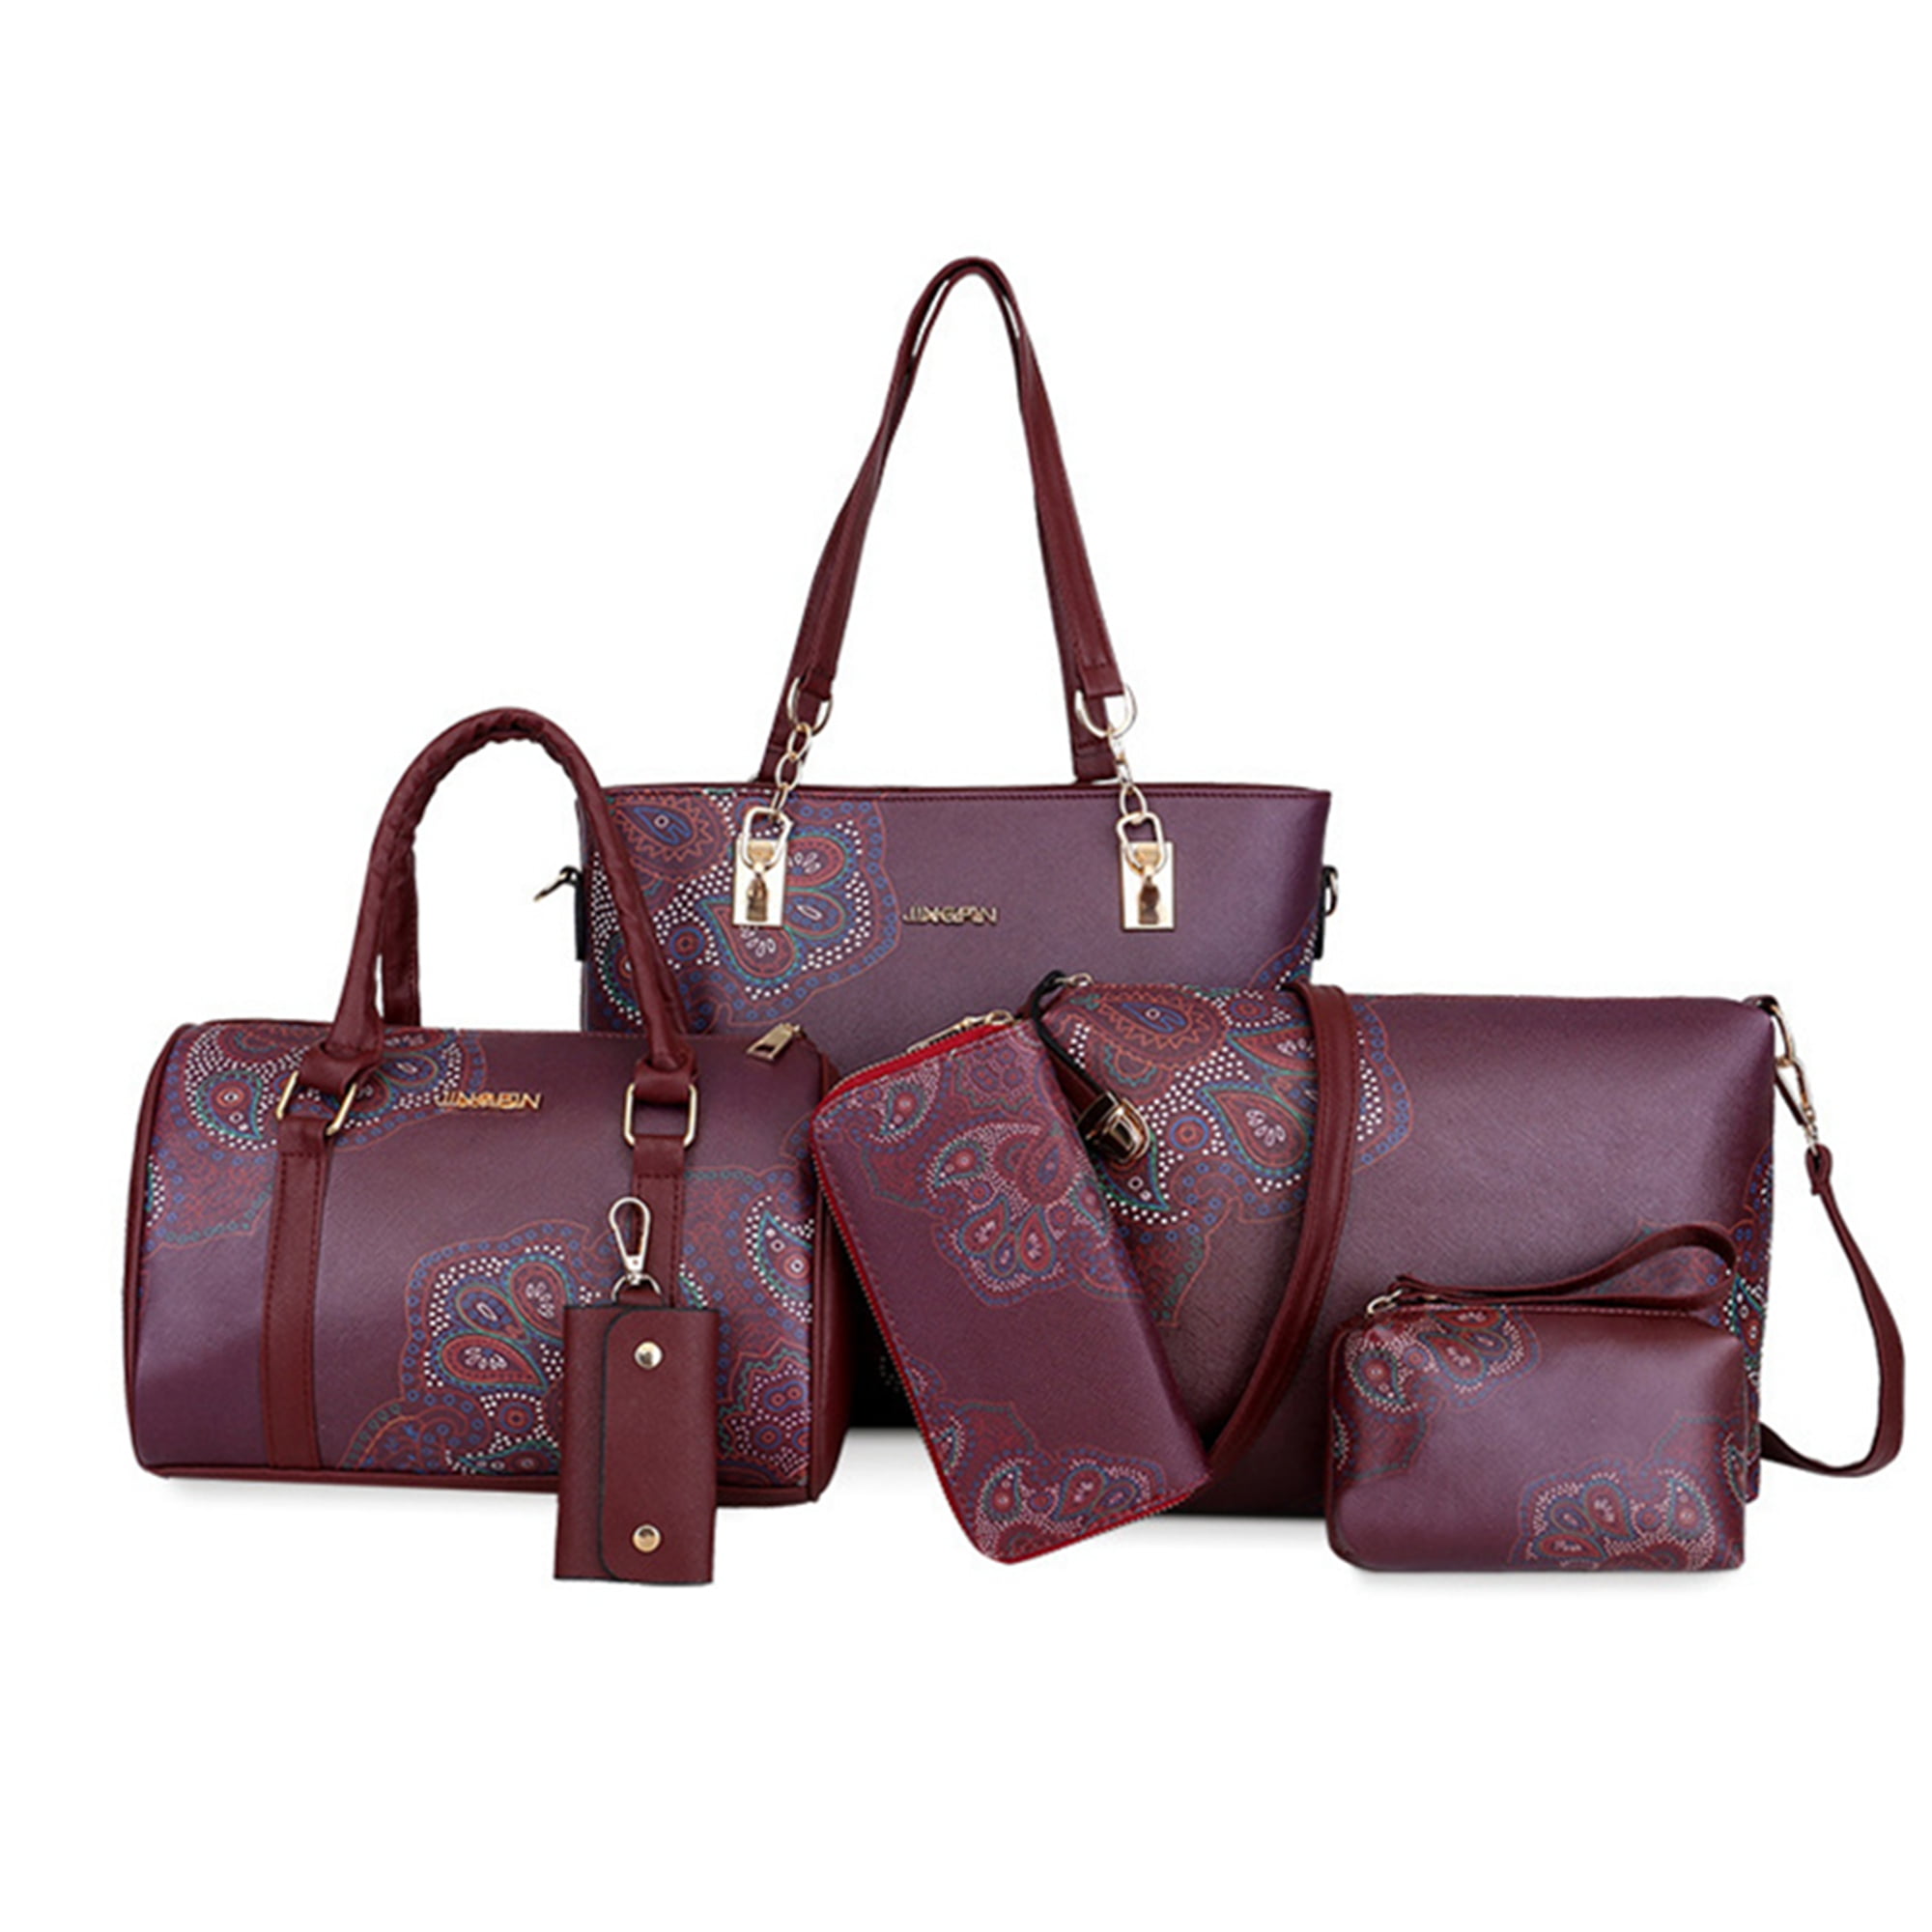 4Pcs/Set Women Lady Leather Handbags Messenger Shoulder Bags Tote Satchel  Purse | eBay